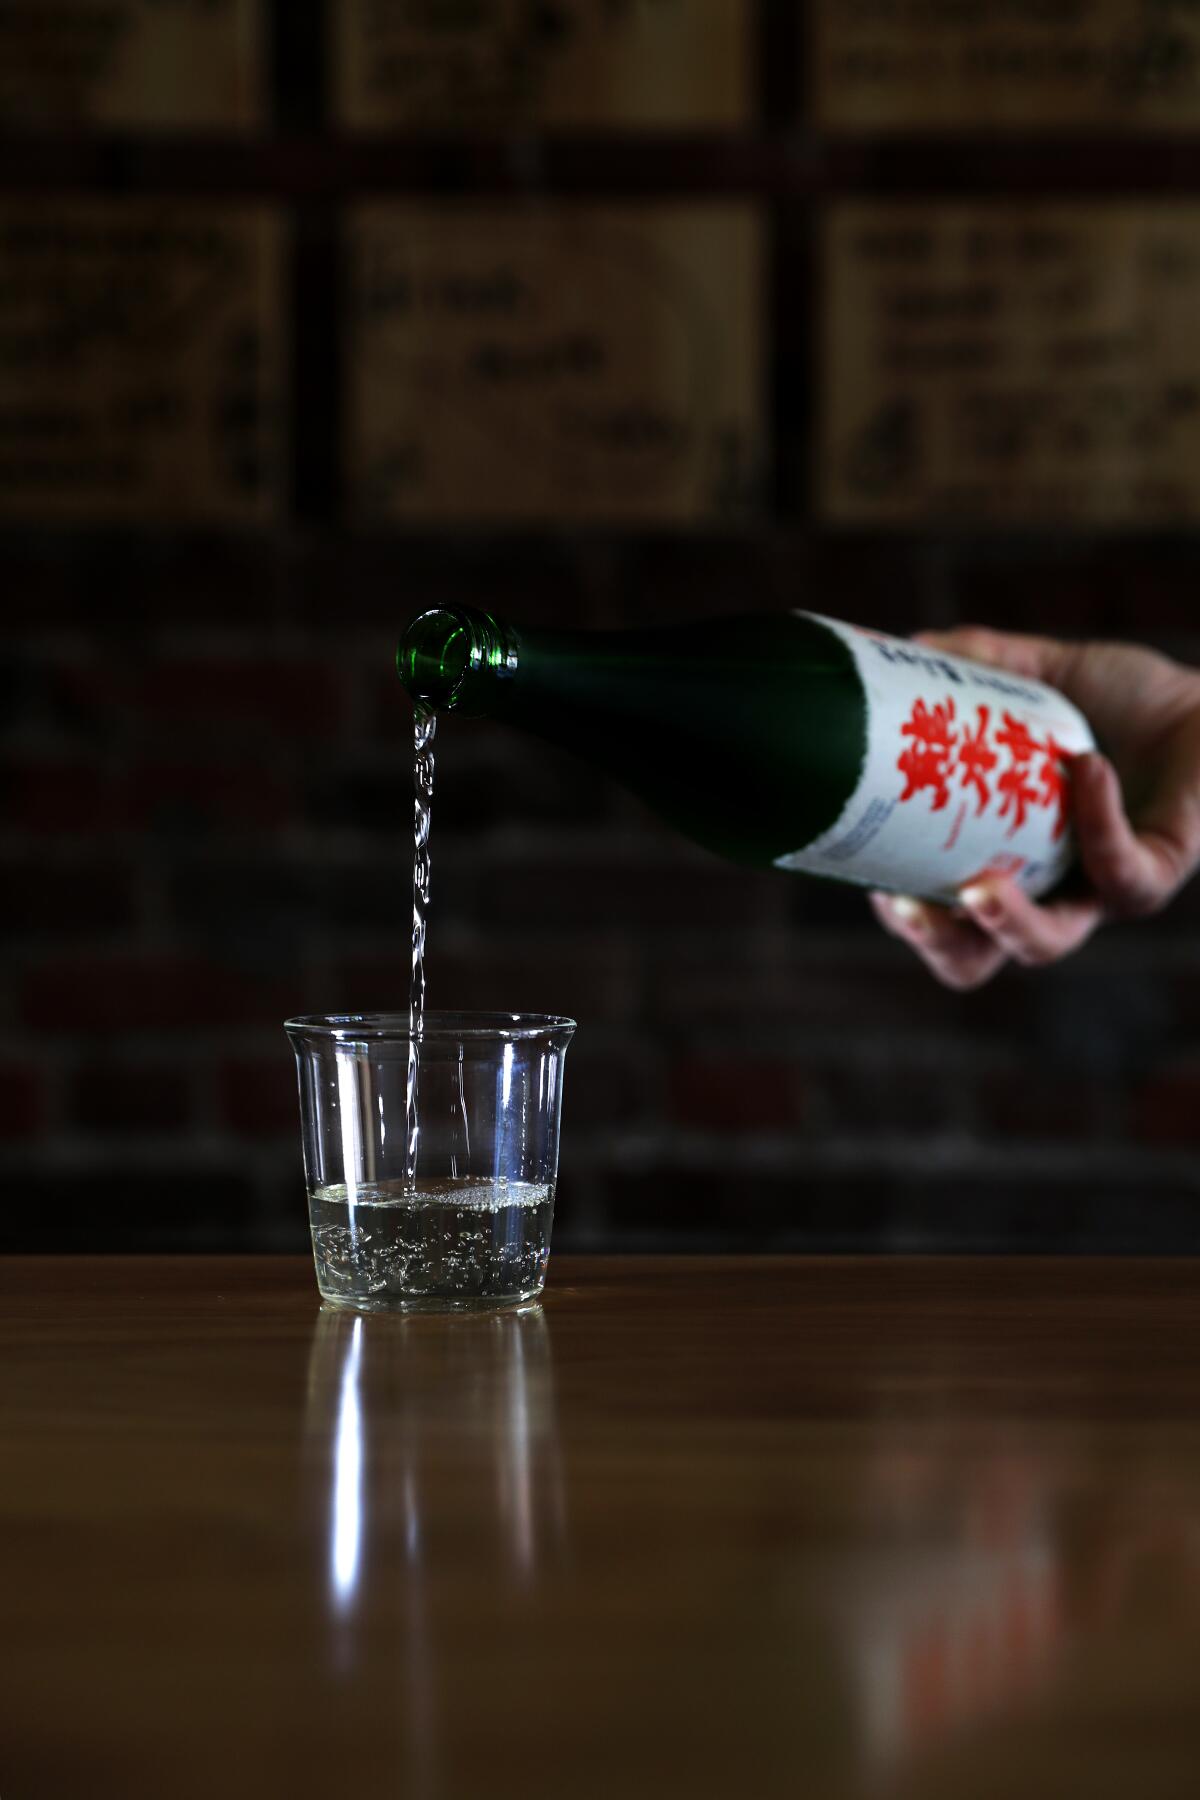 Courtney Kaplan pours a glass of sake